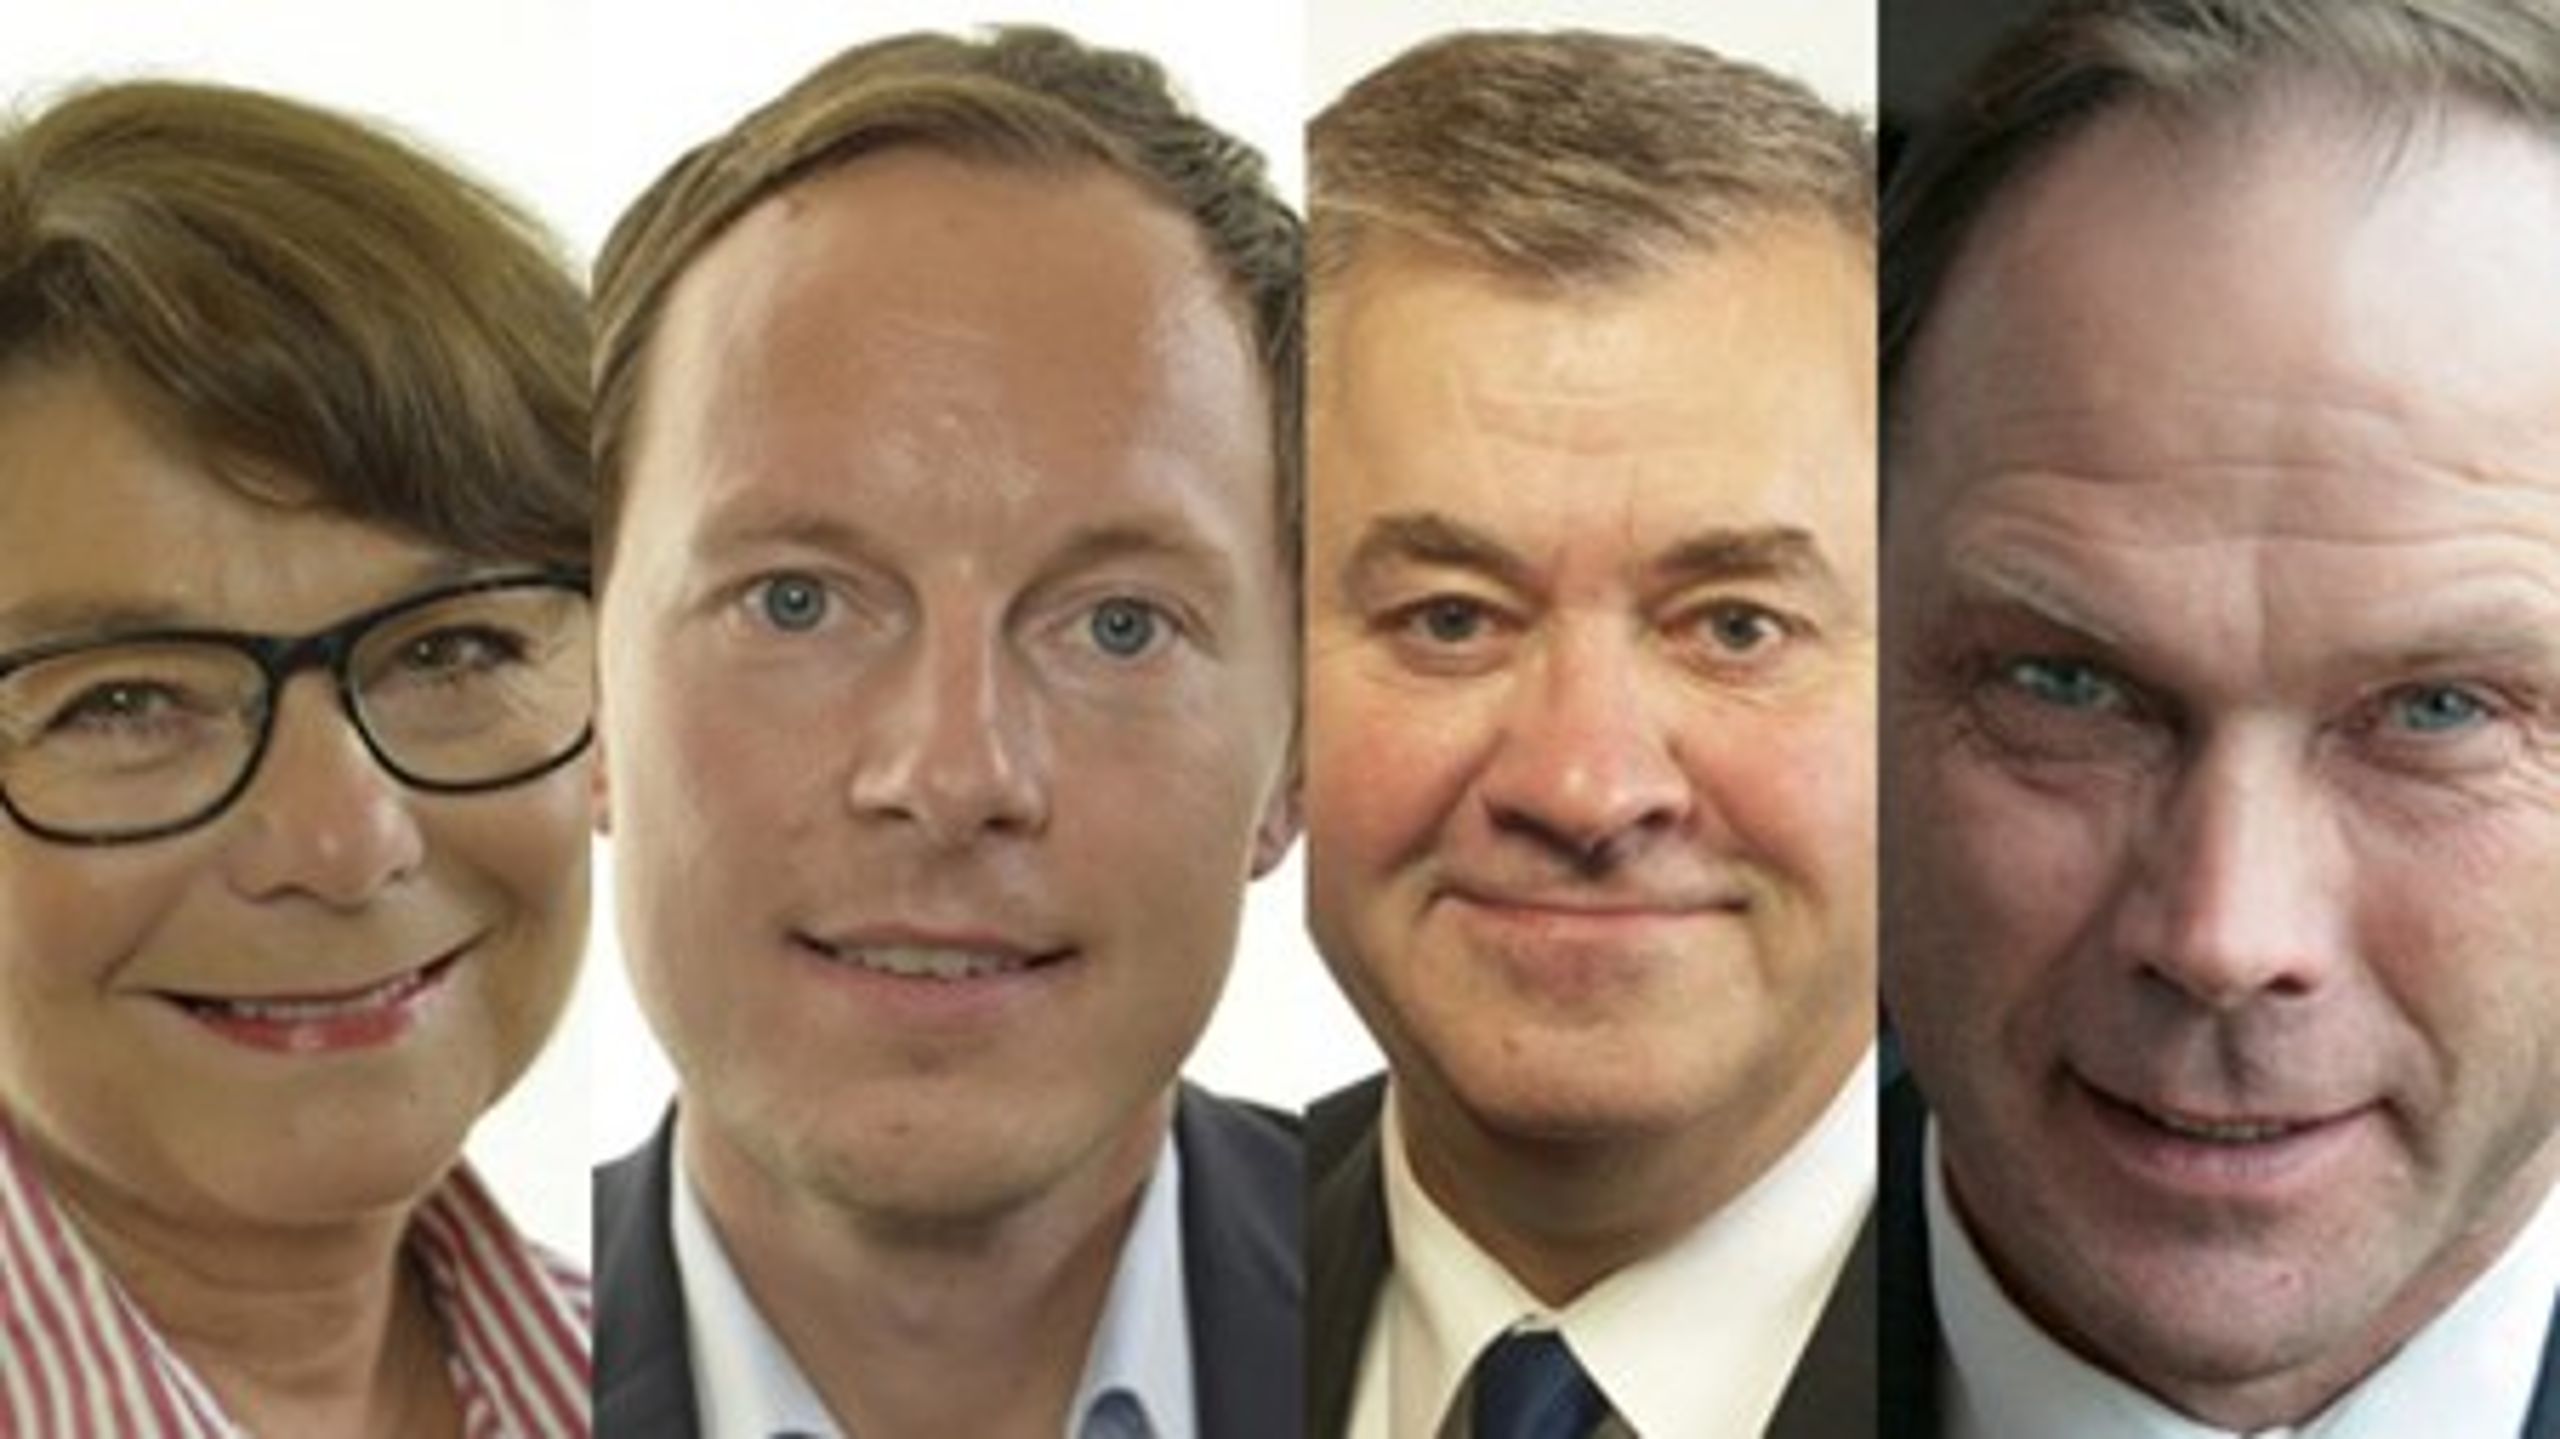 Solveig Zander (C), Mats Persson (FP), Lars-Arne Staxäng (M)
och Lars Gustafsson (KD) lämnade mötet i pensionsgruppen.